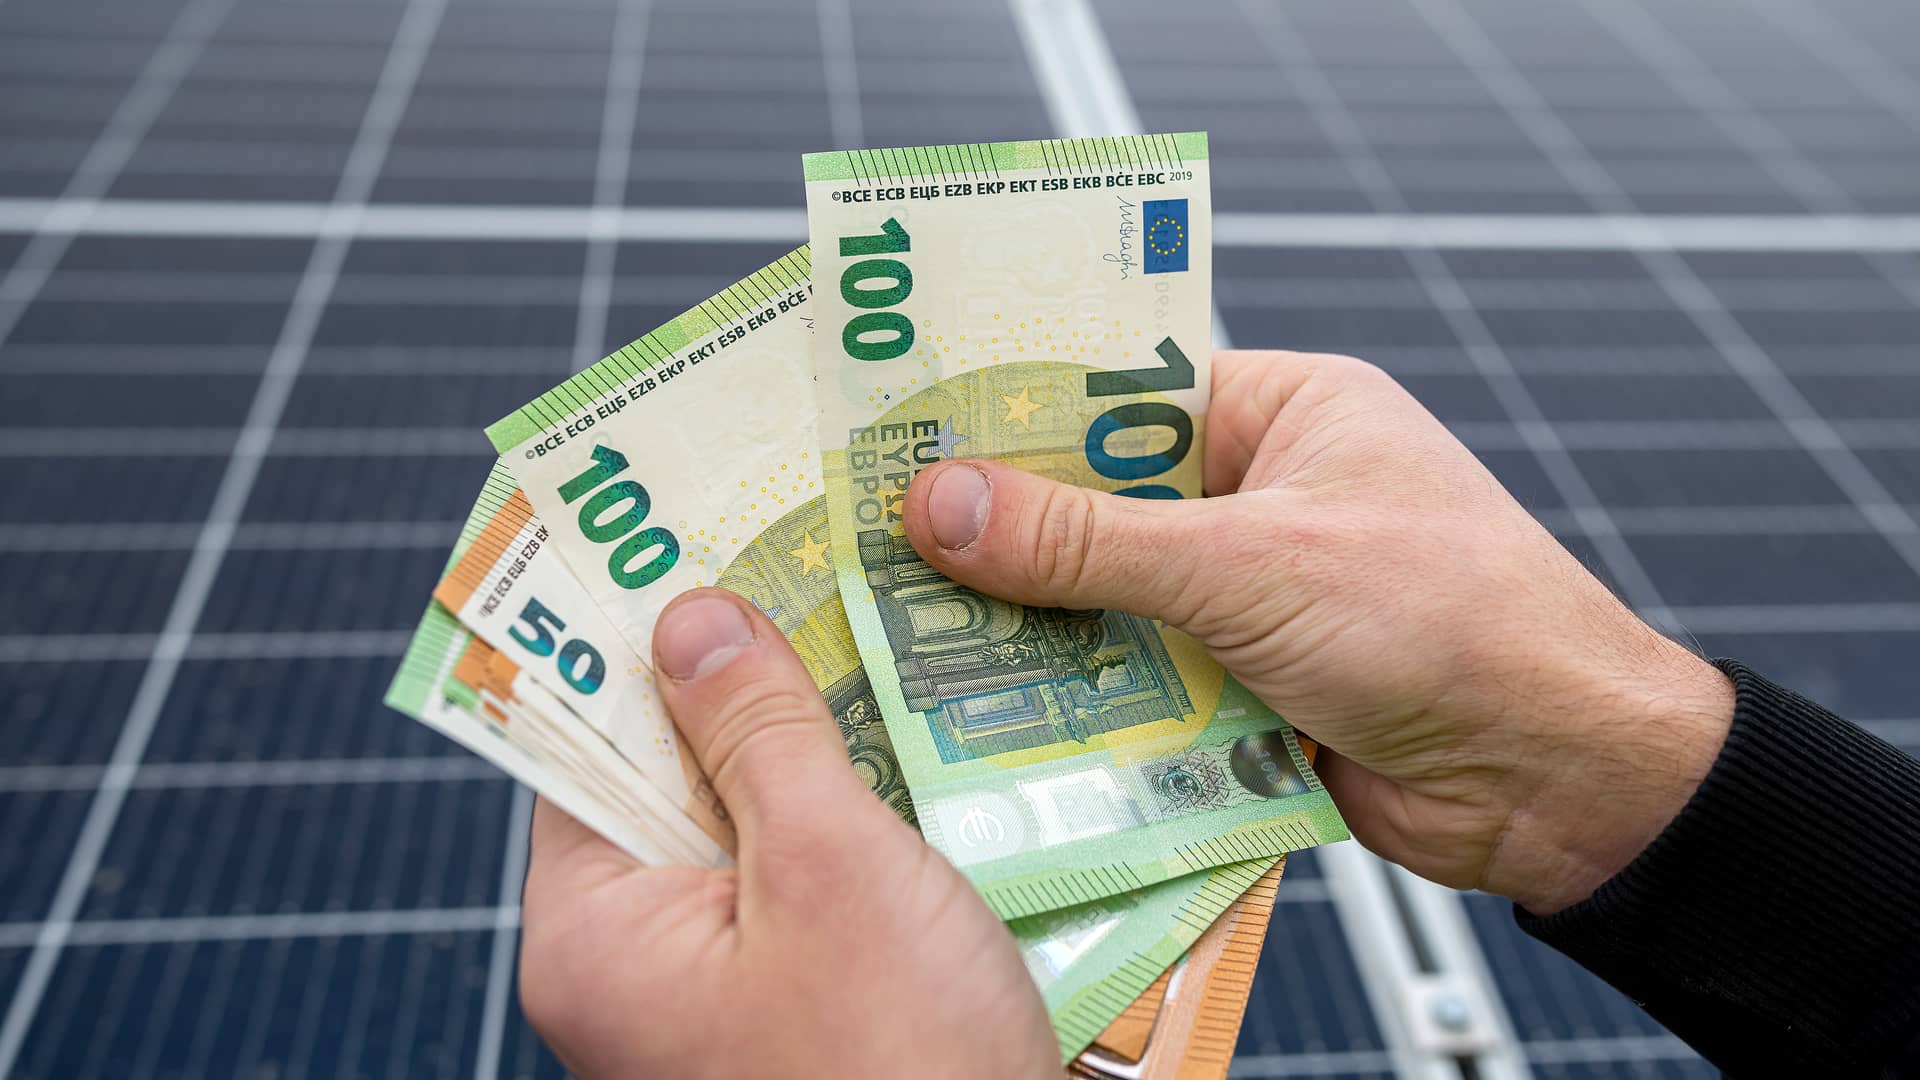 Mano sujetando billetes con placas solares de fondo ilustra el precio de la energía solar